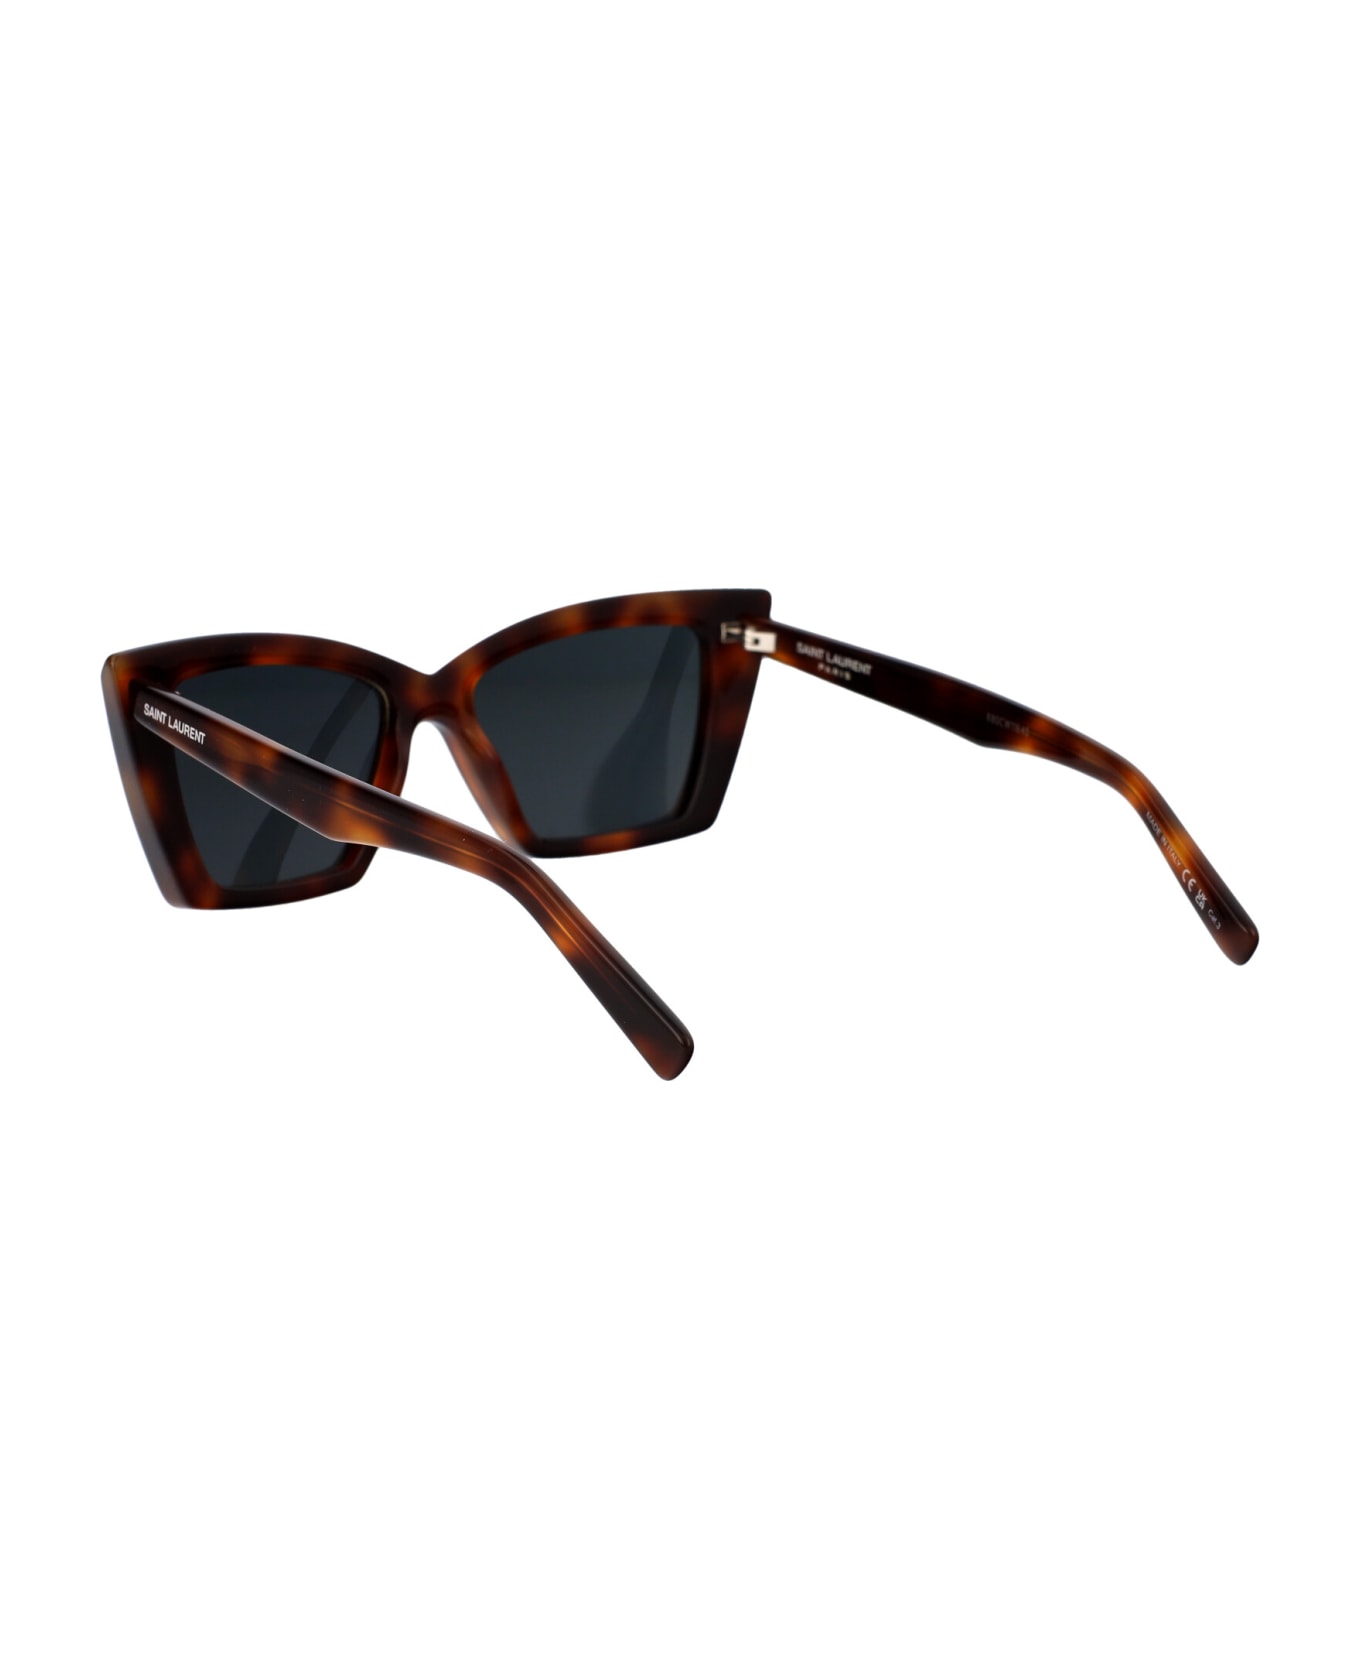 Saint Laurent Eyewear Sl 657 Sunglasses - 002 HAVANA HAVANA BLACK サングラス